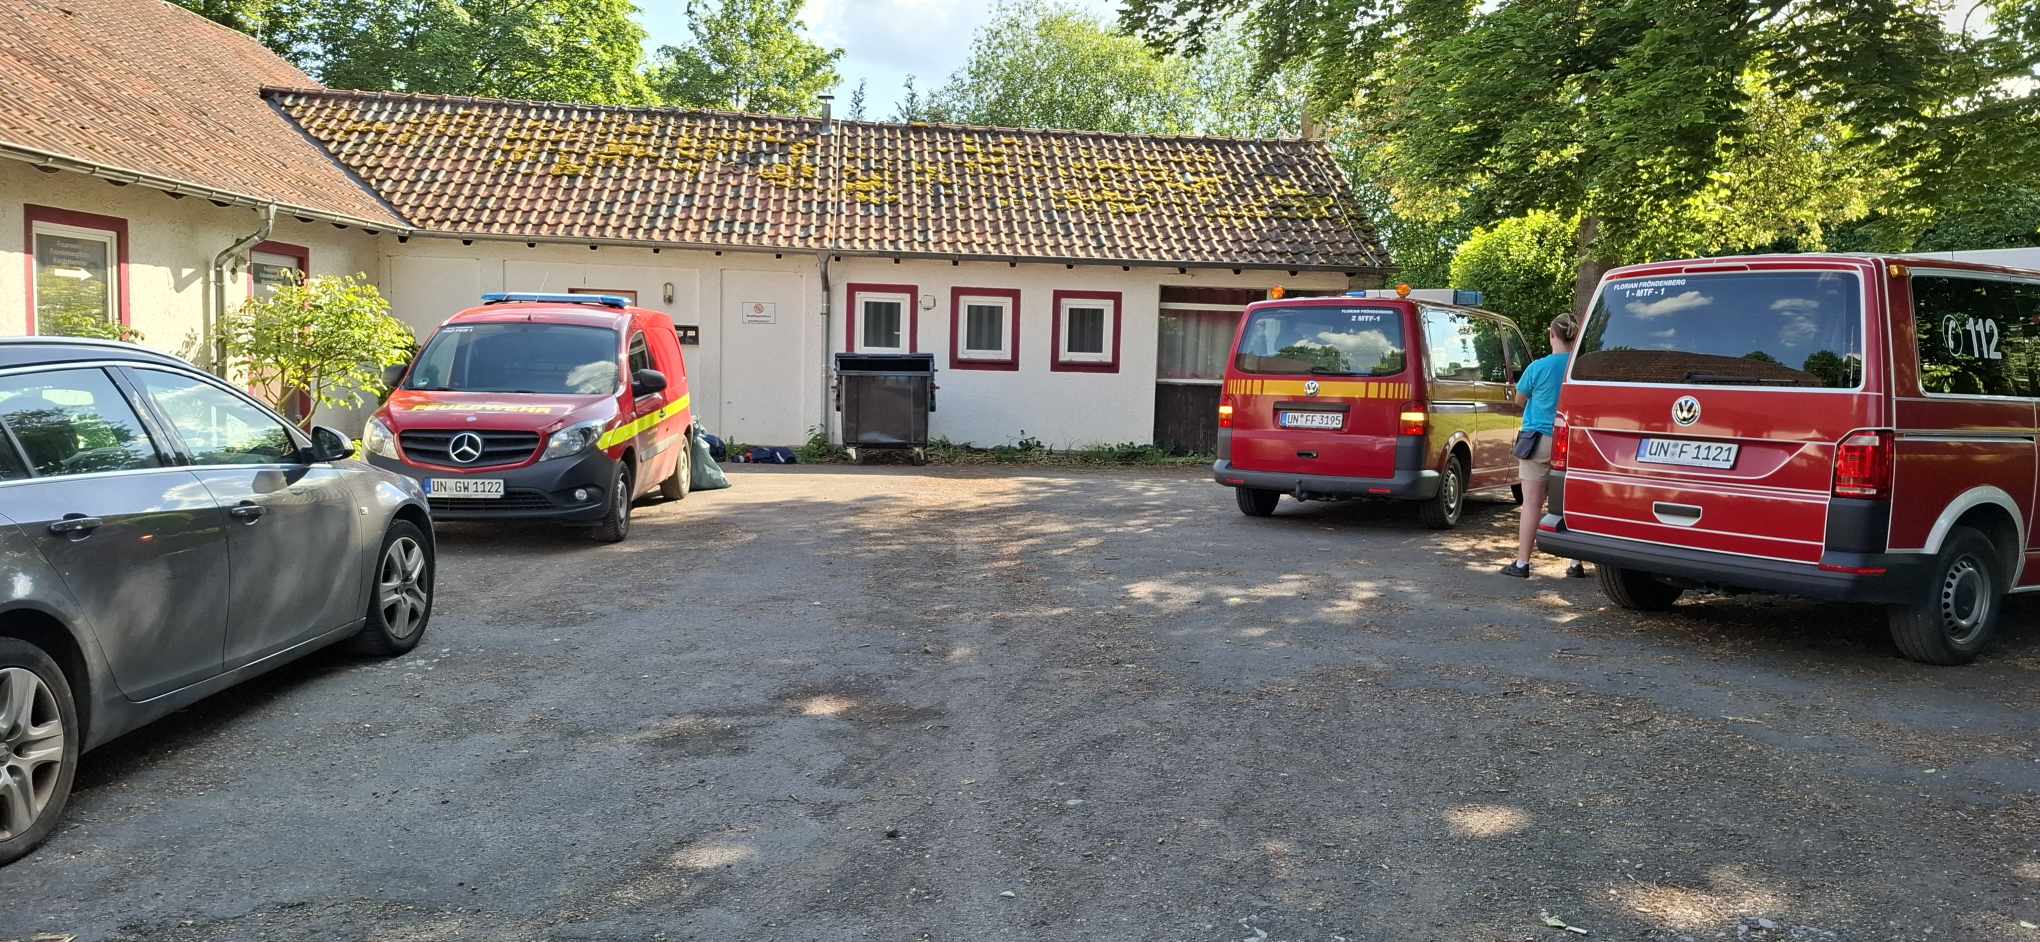 Wohncontainer für Flüchtlinge in Fröndenberg: Bewohner wurden offenbar gar nicht informiert